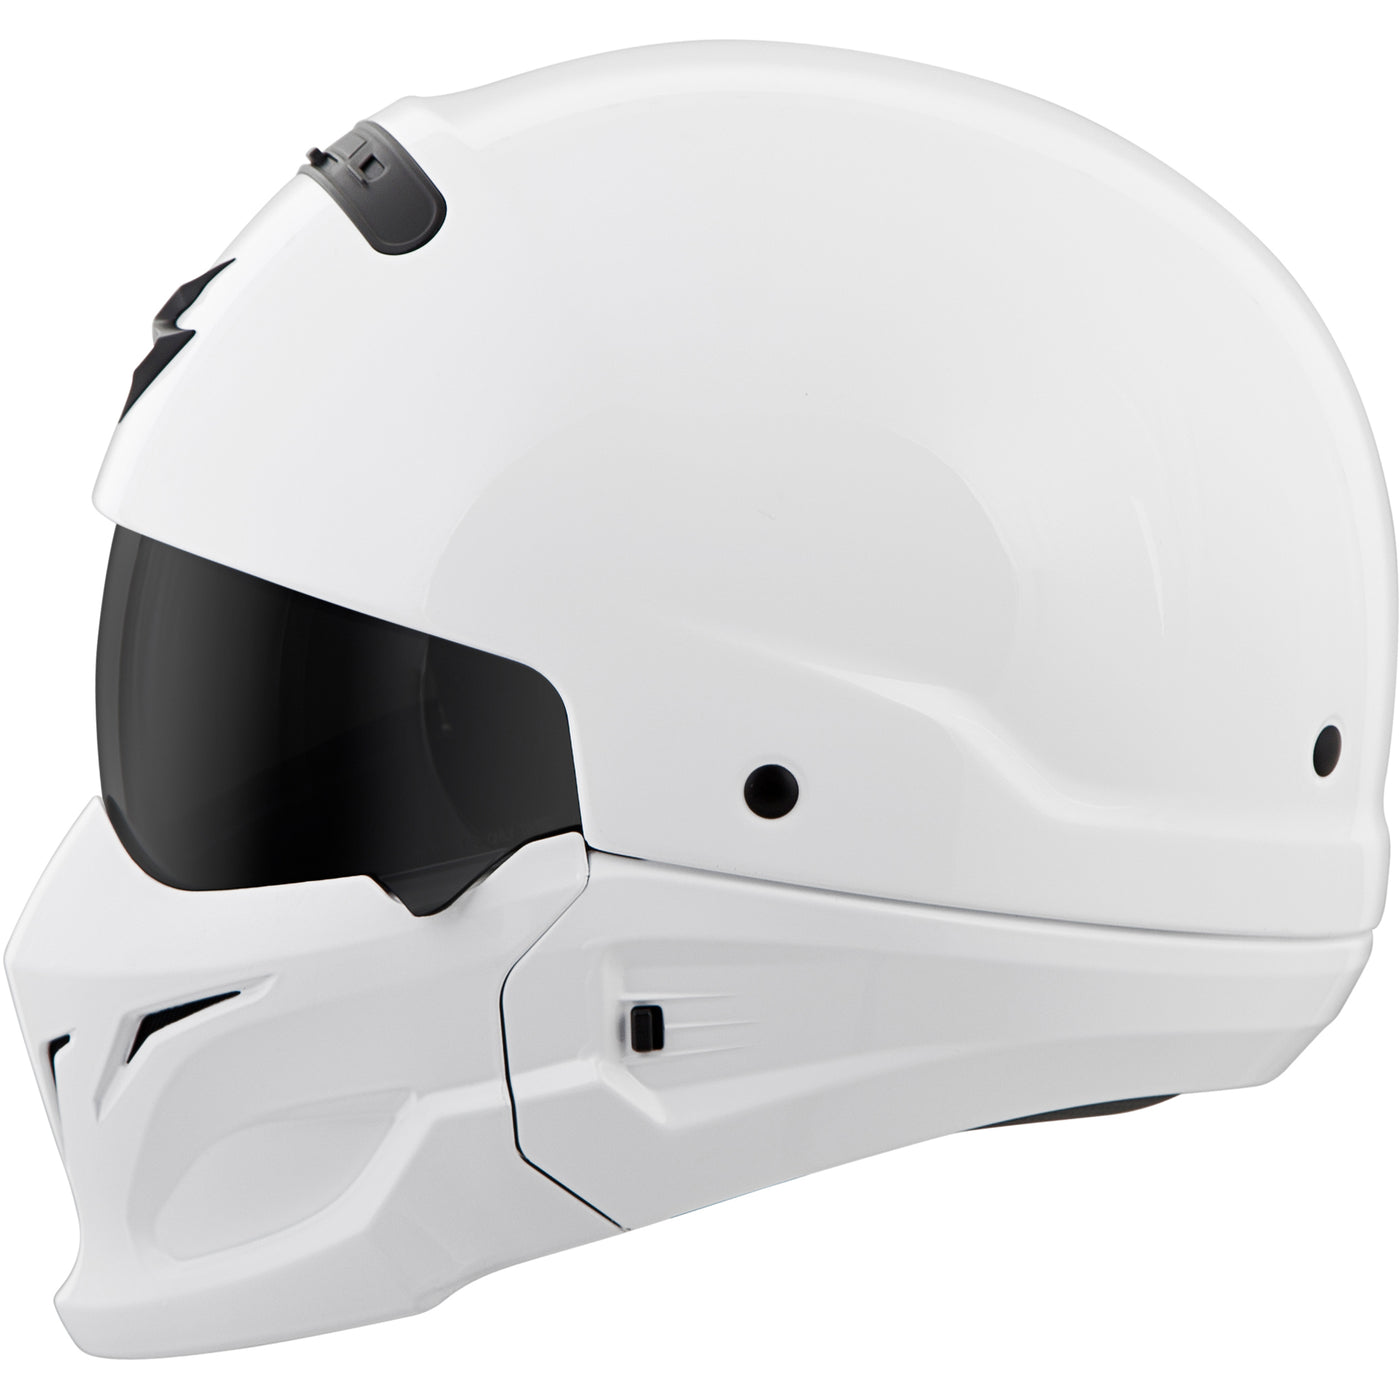 SCORPION EXO Covert Solid Helmet